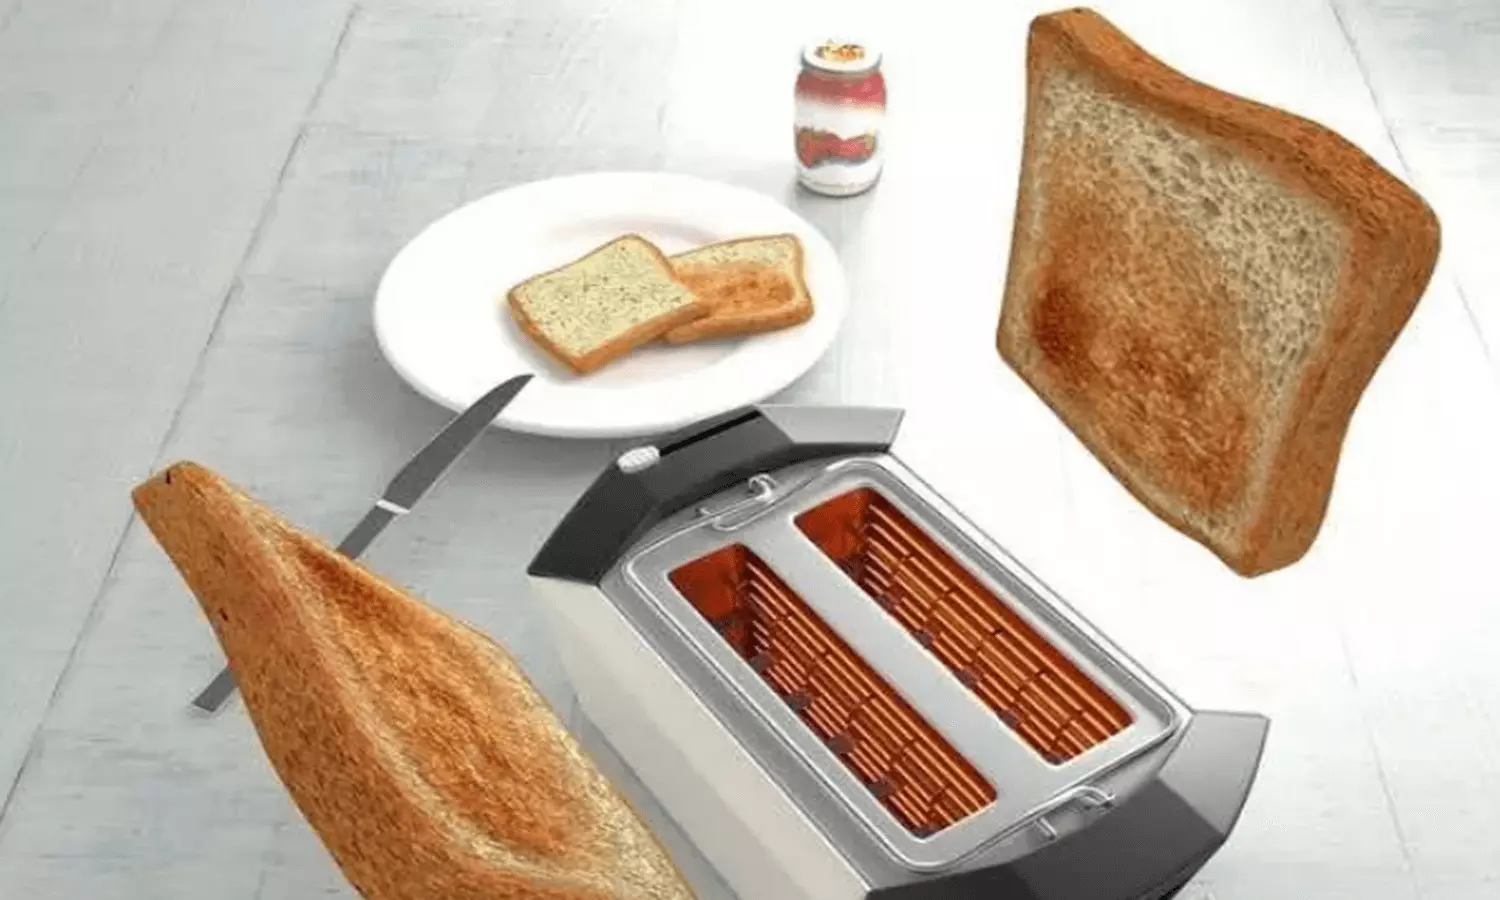 Best Pop Up Toasters: सुबह के काम की परेशानी करें खत्म, खरीदे पॉप अप टोस्टर